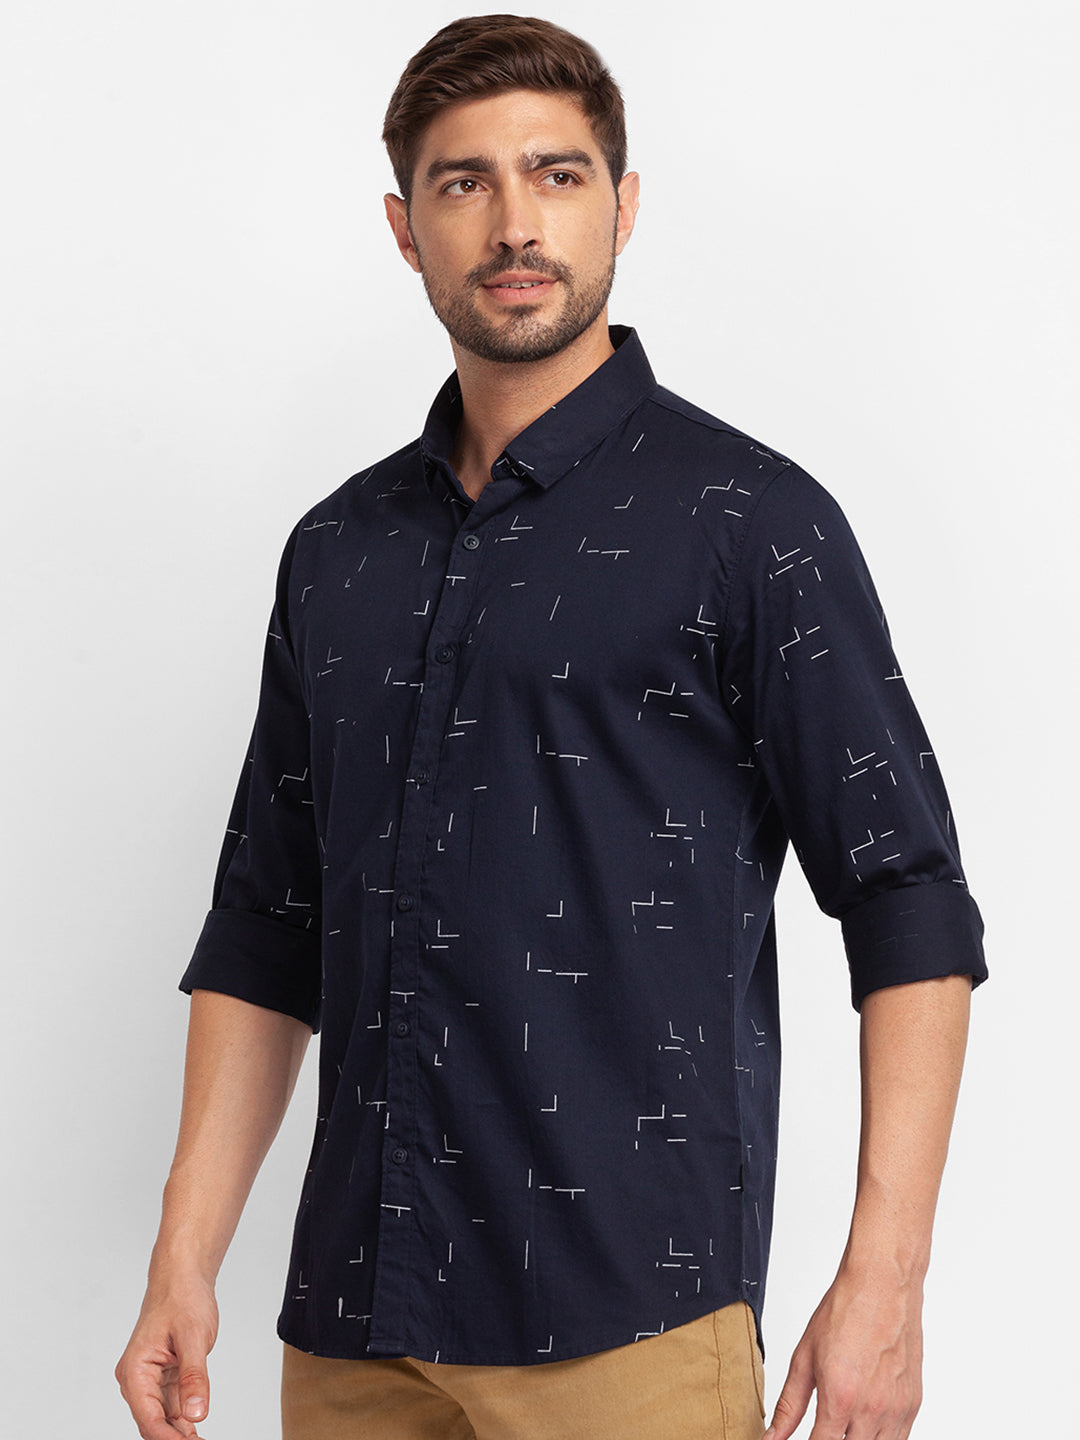 Spykar Navy Blue Satin Full Sleeve Printed Shirt For Men